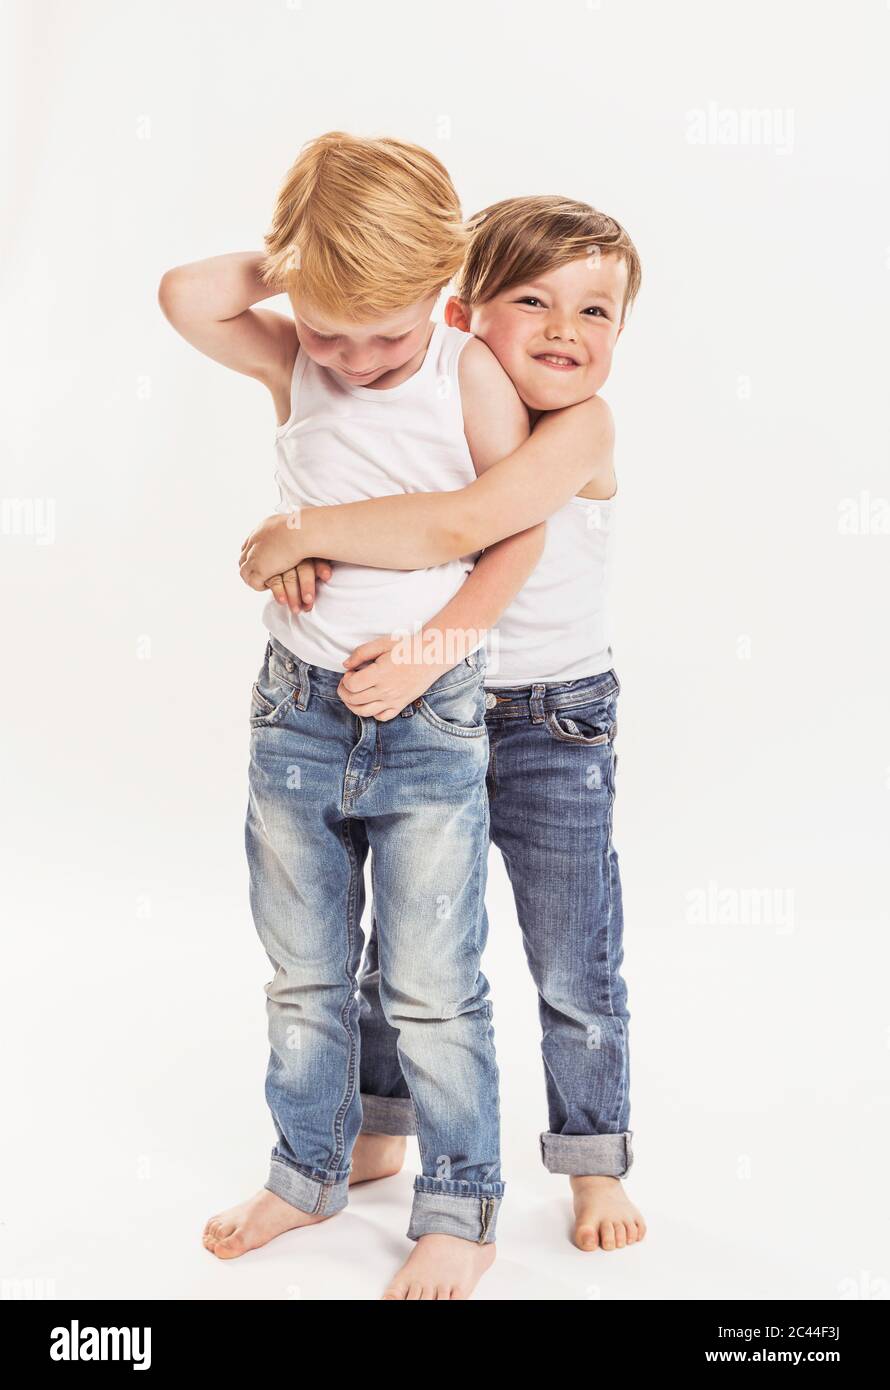 Ritratto di ragazzino che abbracciava l'altro ragazzino davanti a sfondo bianco Foto Stock